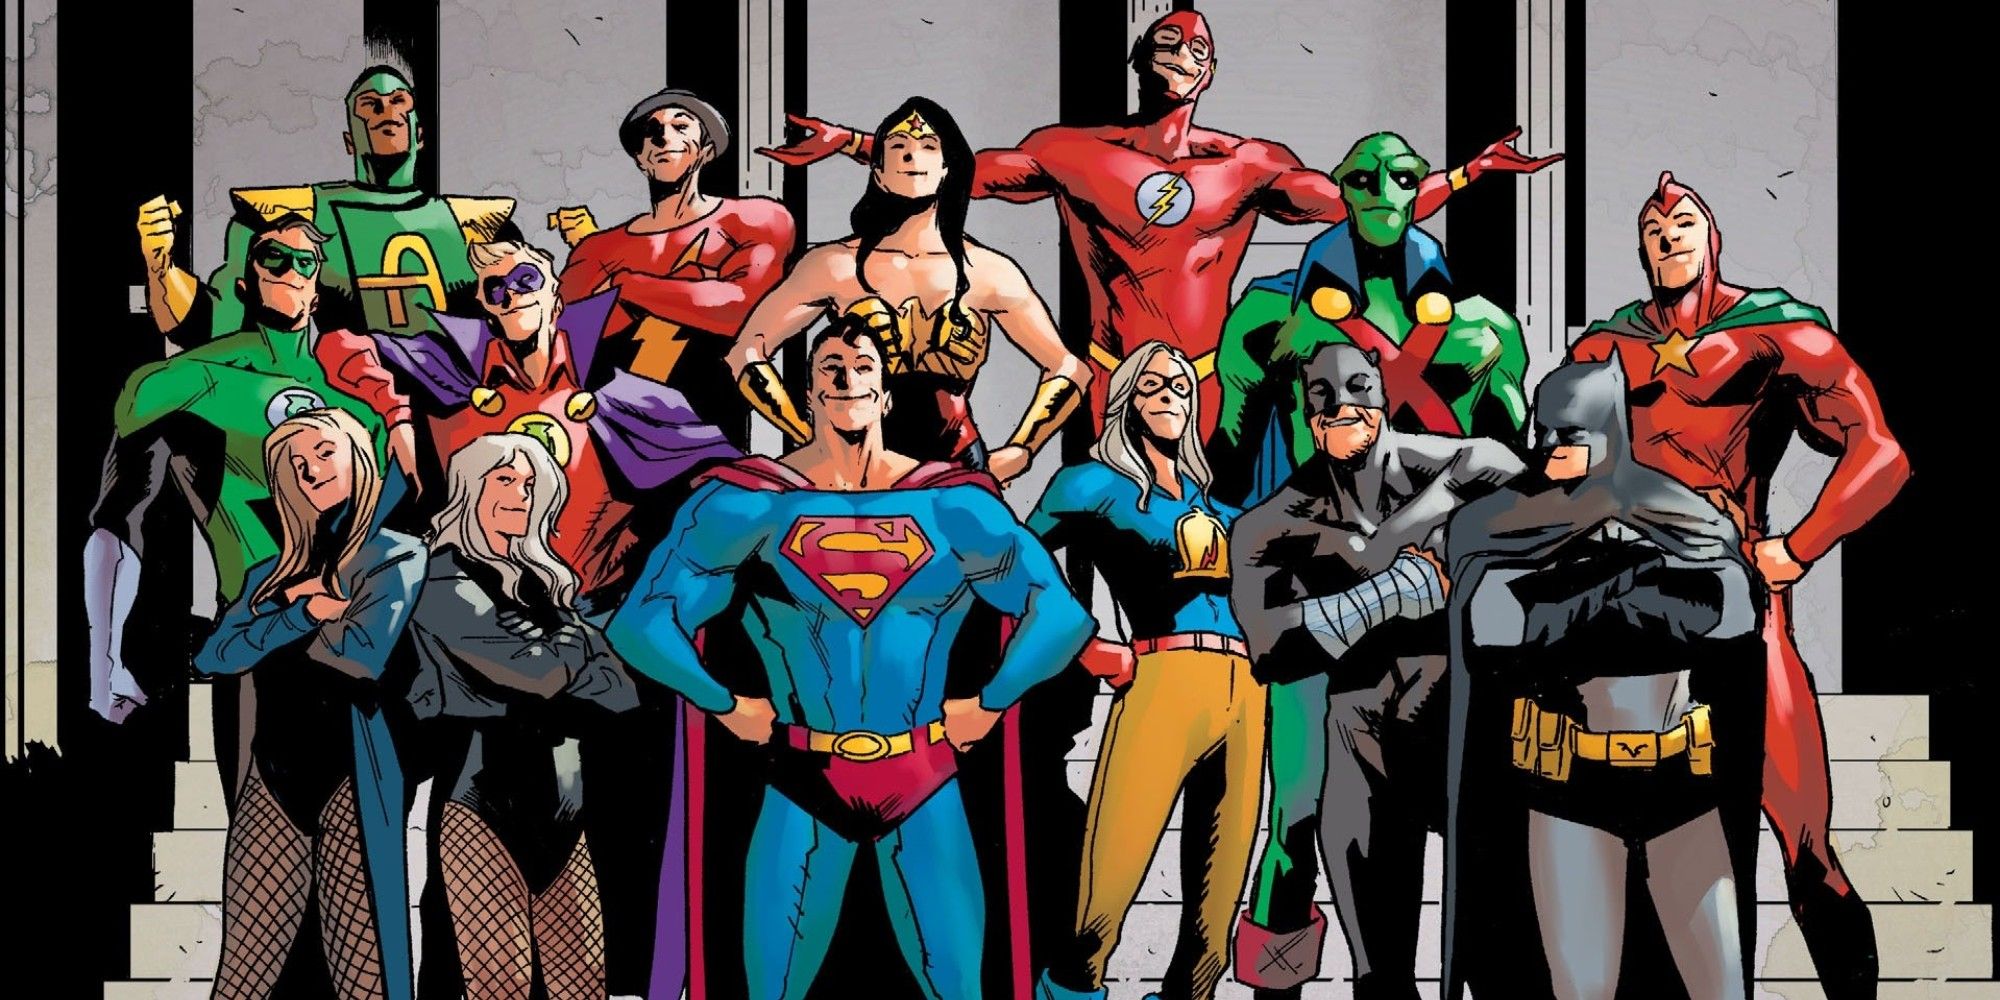 League members justice Justice League